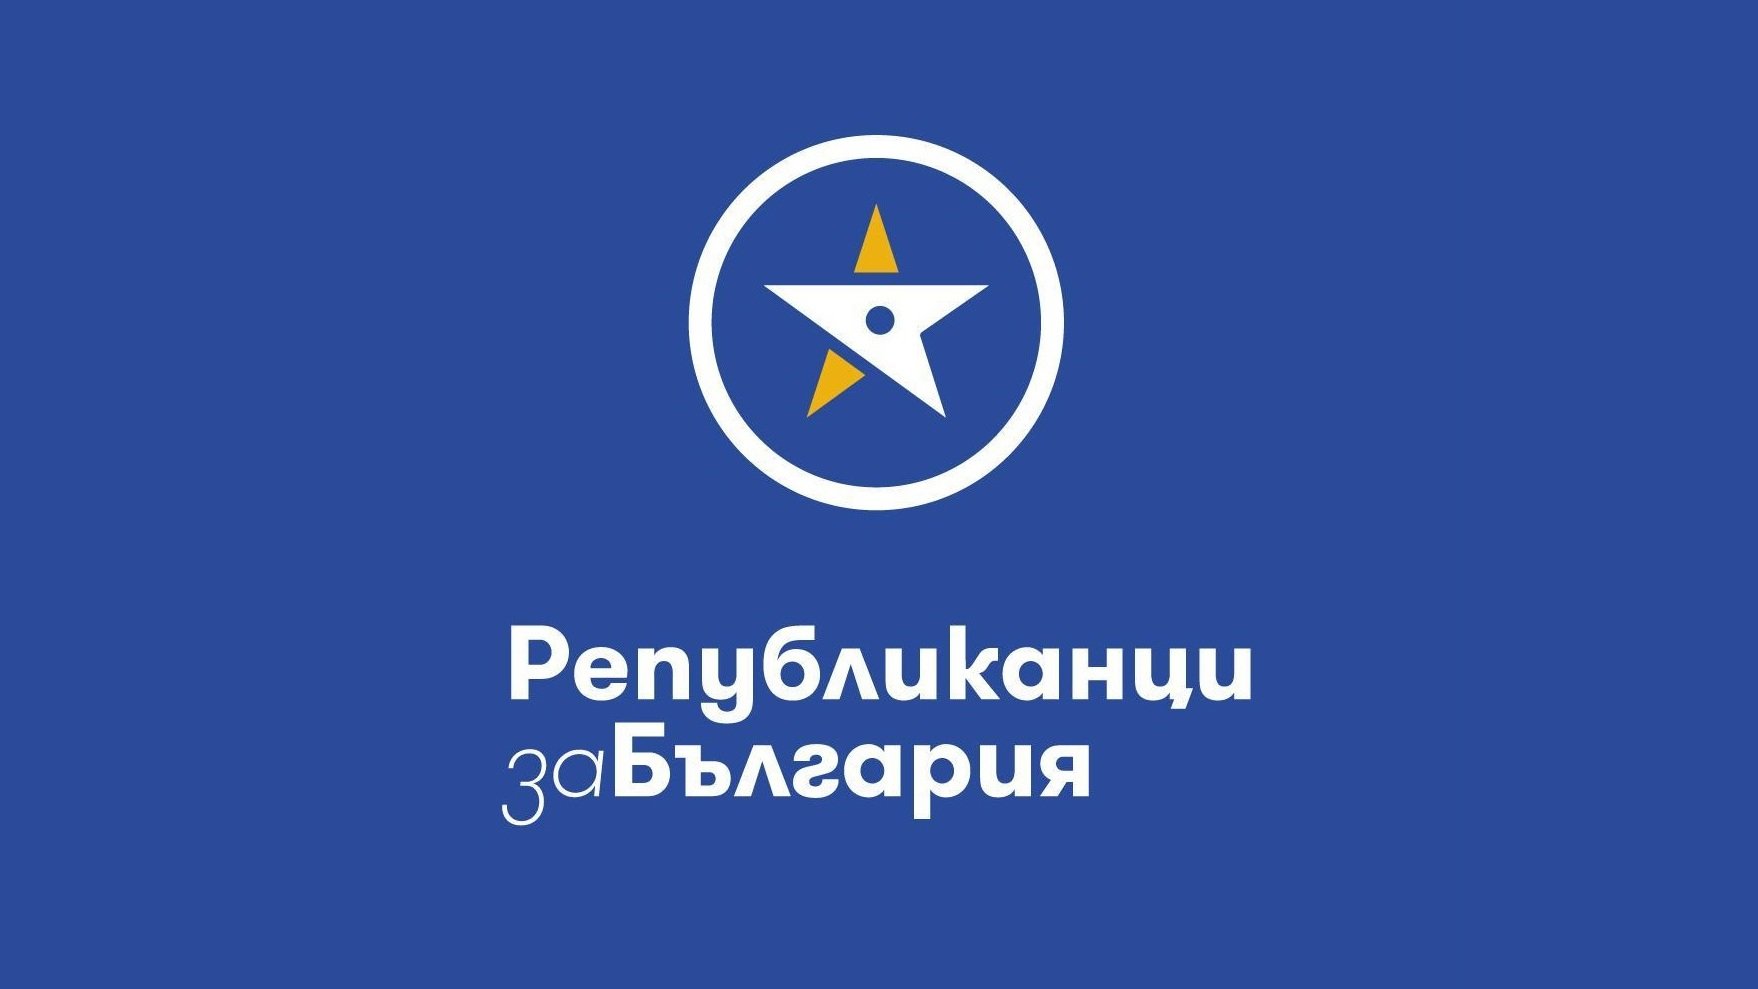 Партията на Цветан Цветанов Републиканци за България определи като лична